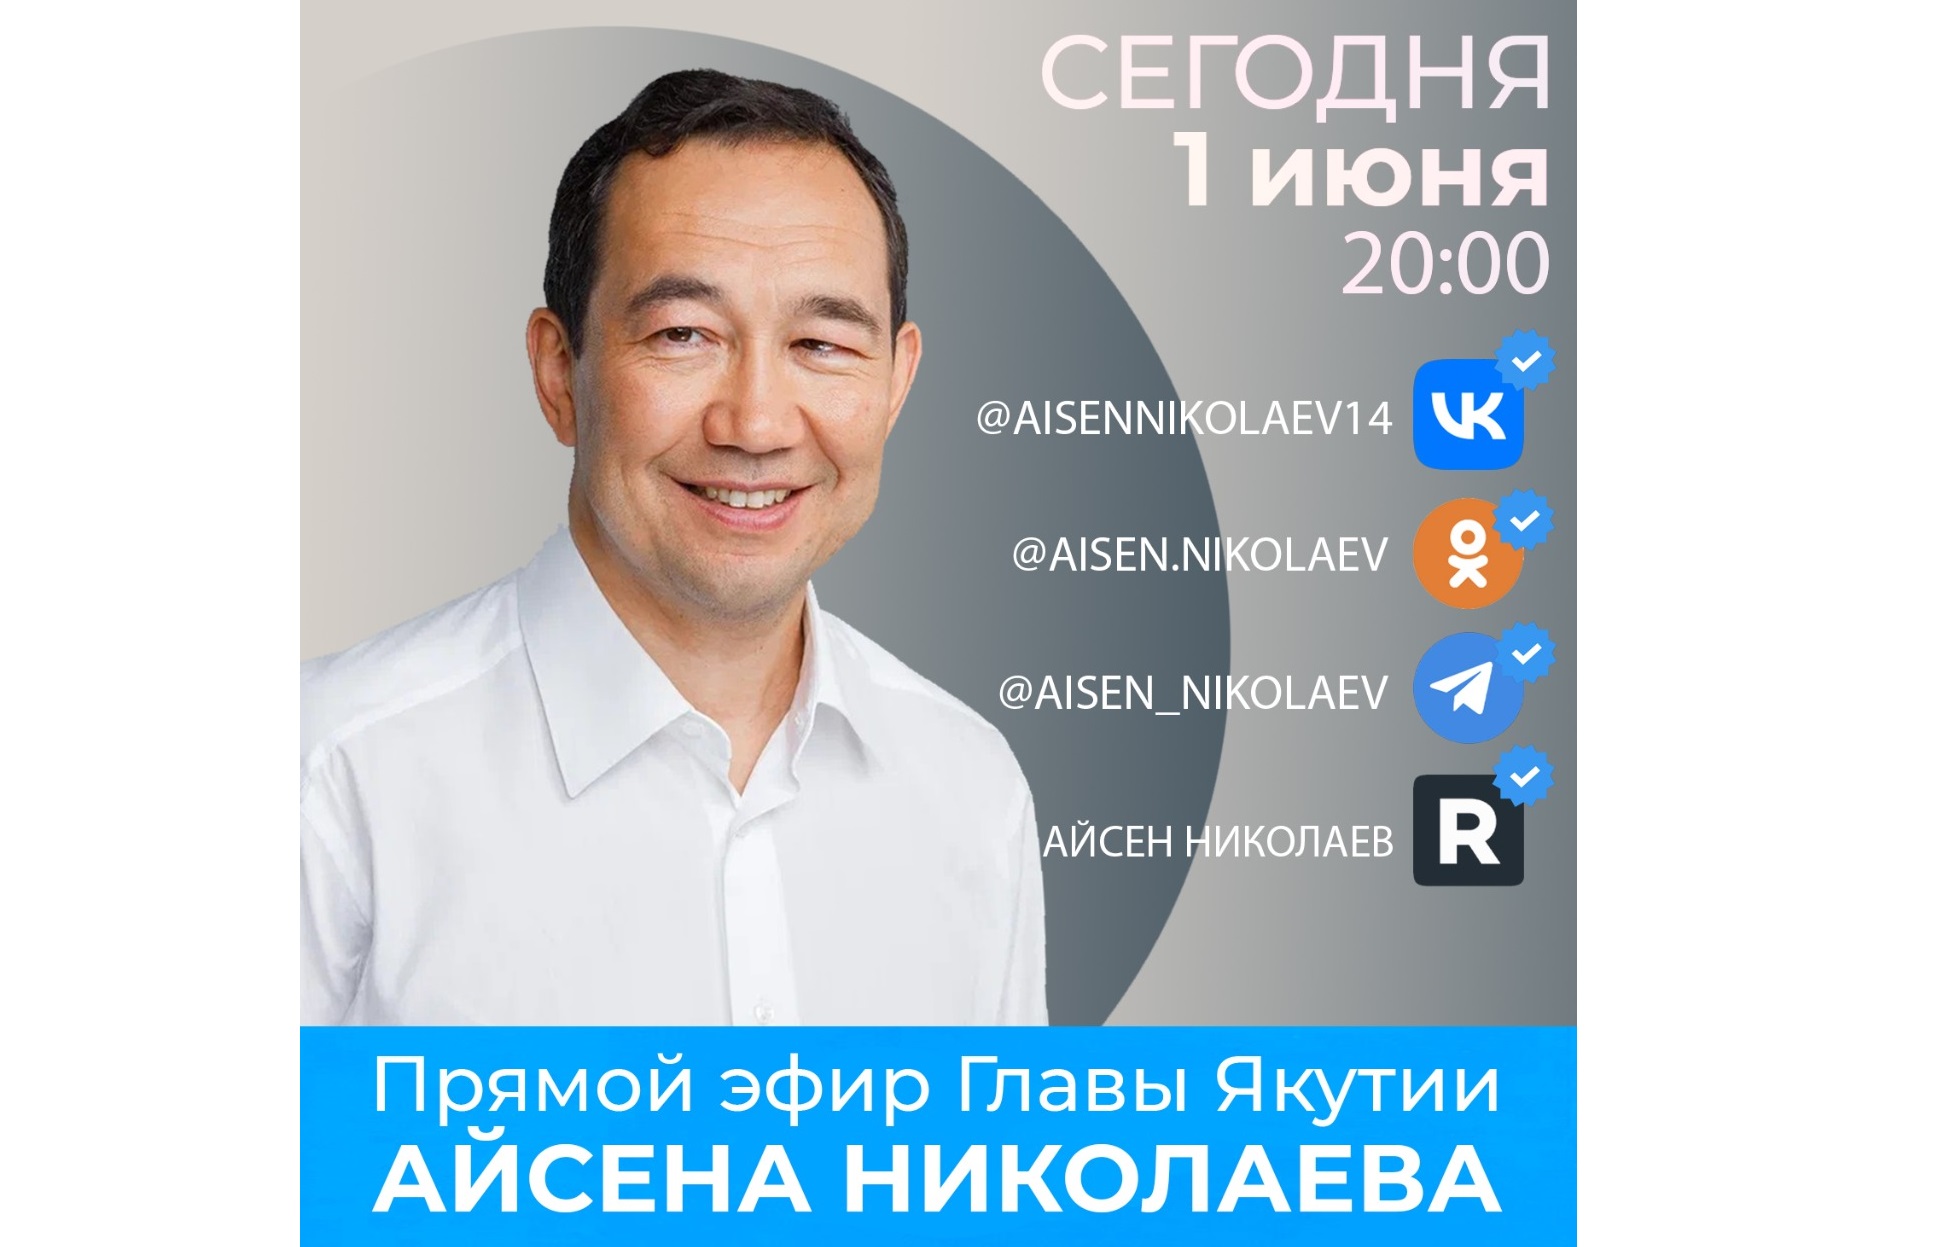 Айсен Николаев ответит на вопросы якутян в прямом эфире в соцсетях 1 июня